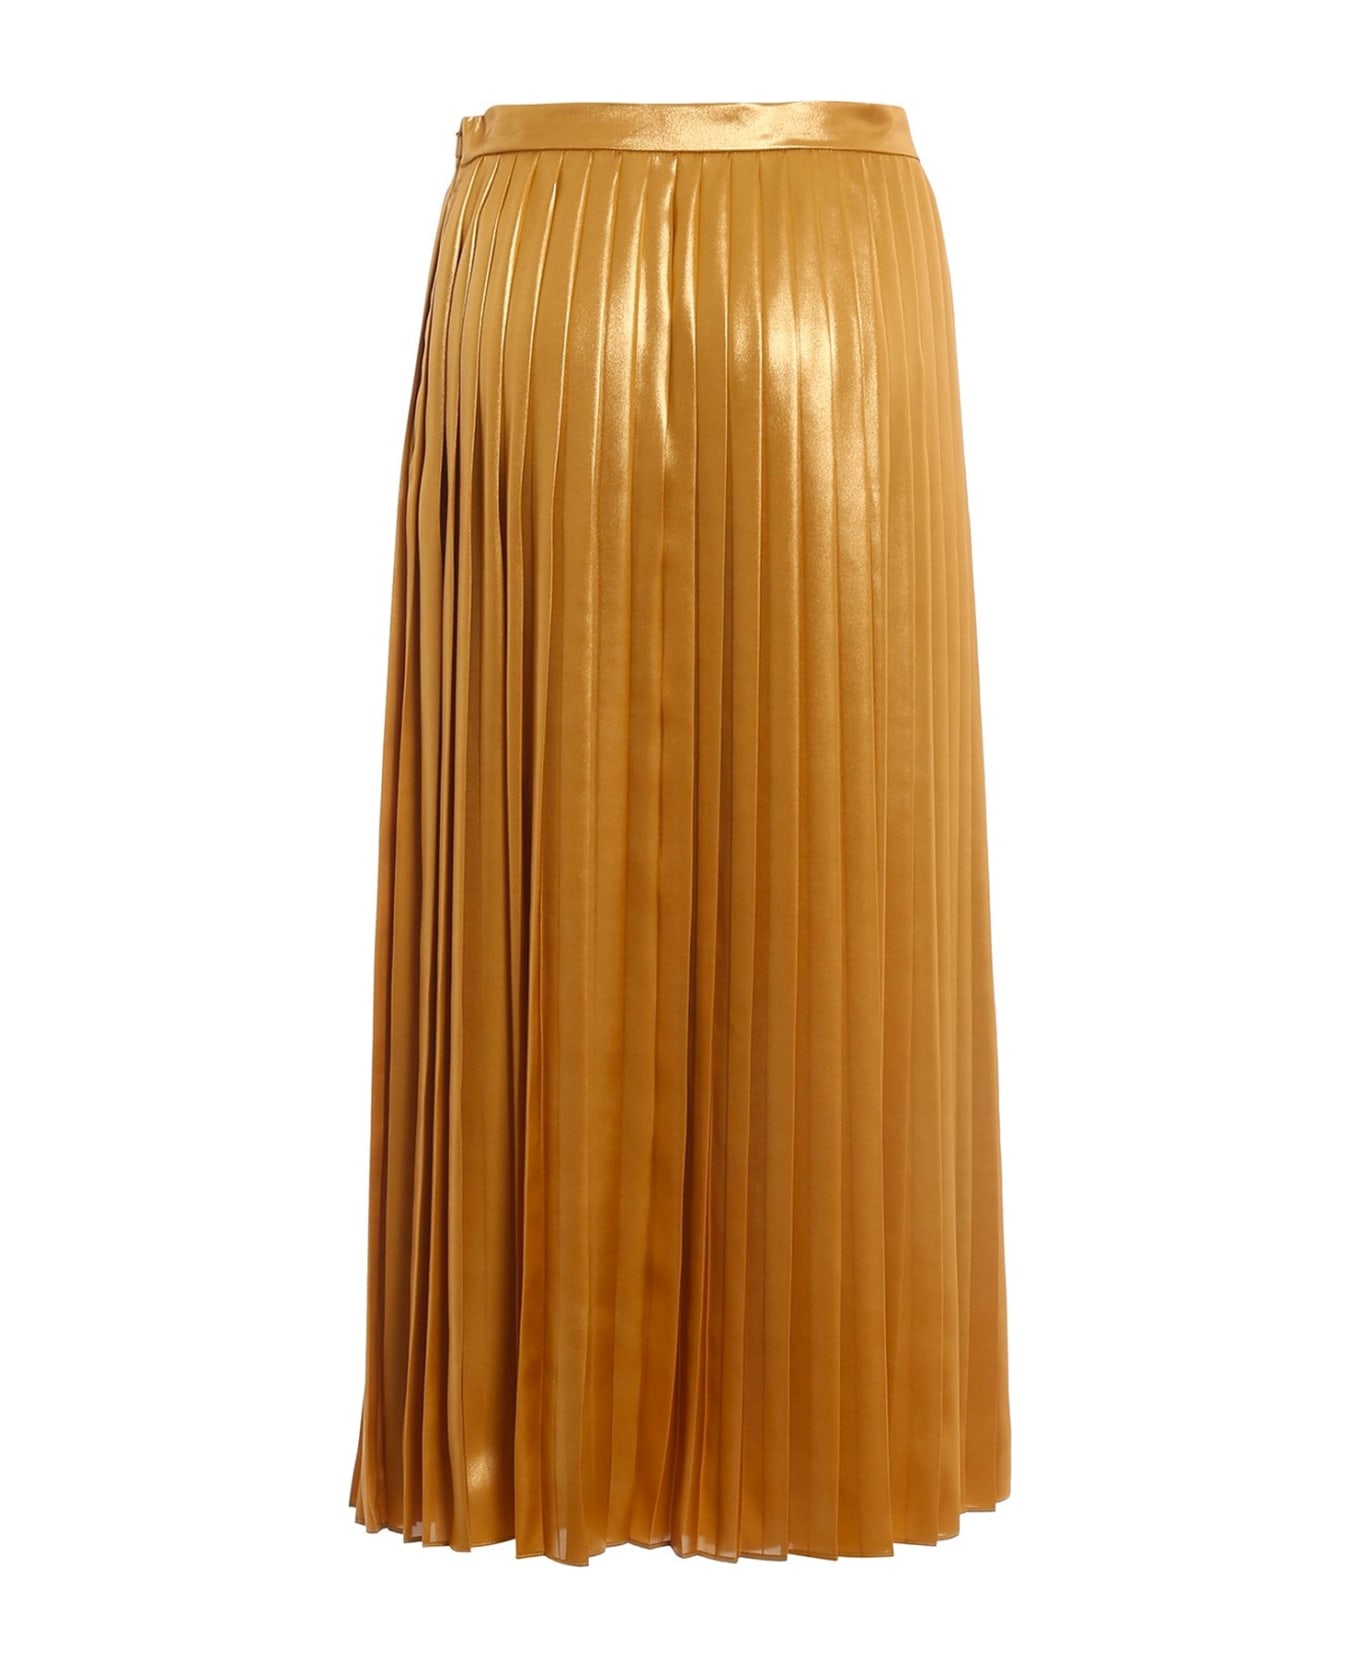 Max Mara Studio Studio Fragola Skirt - Gold